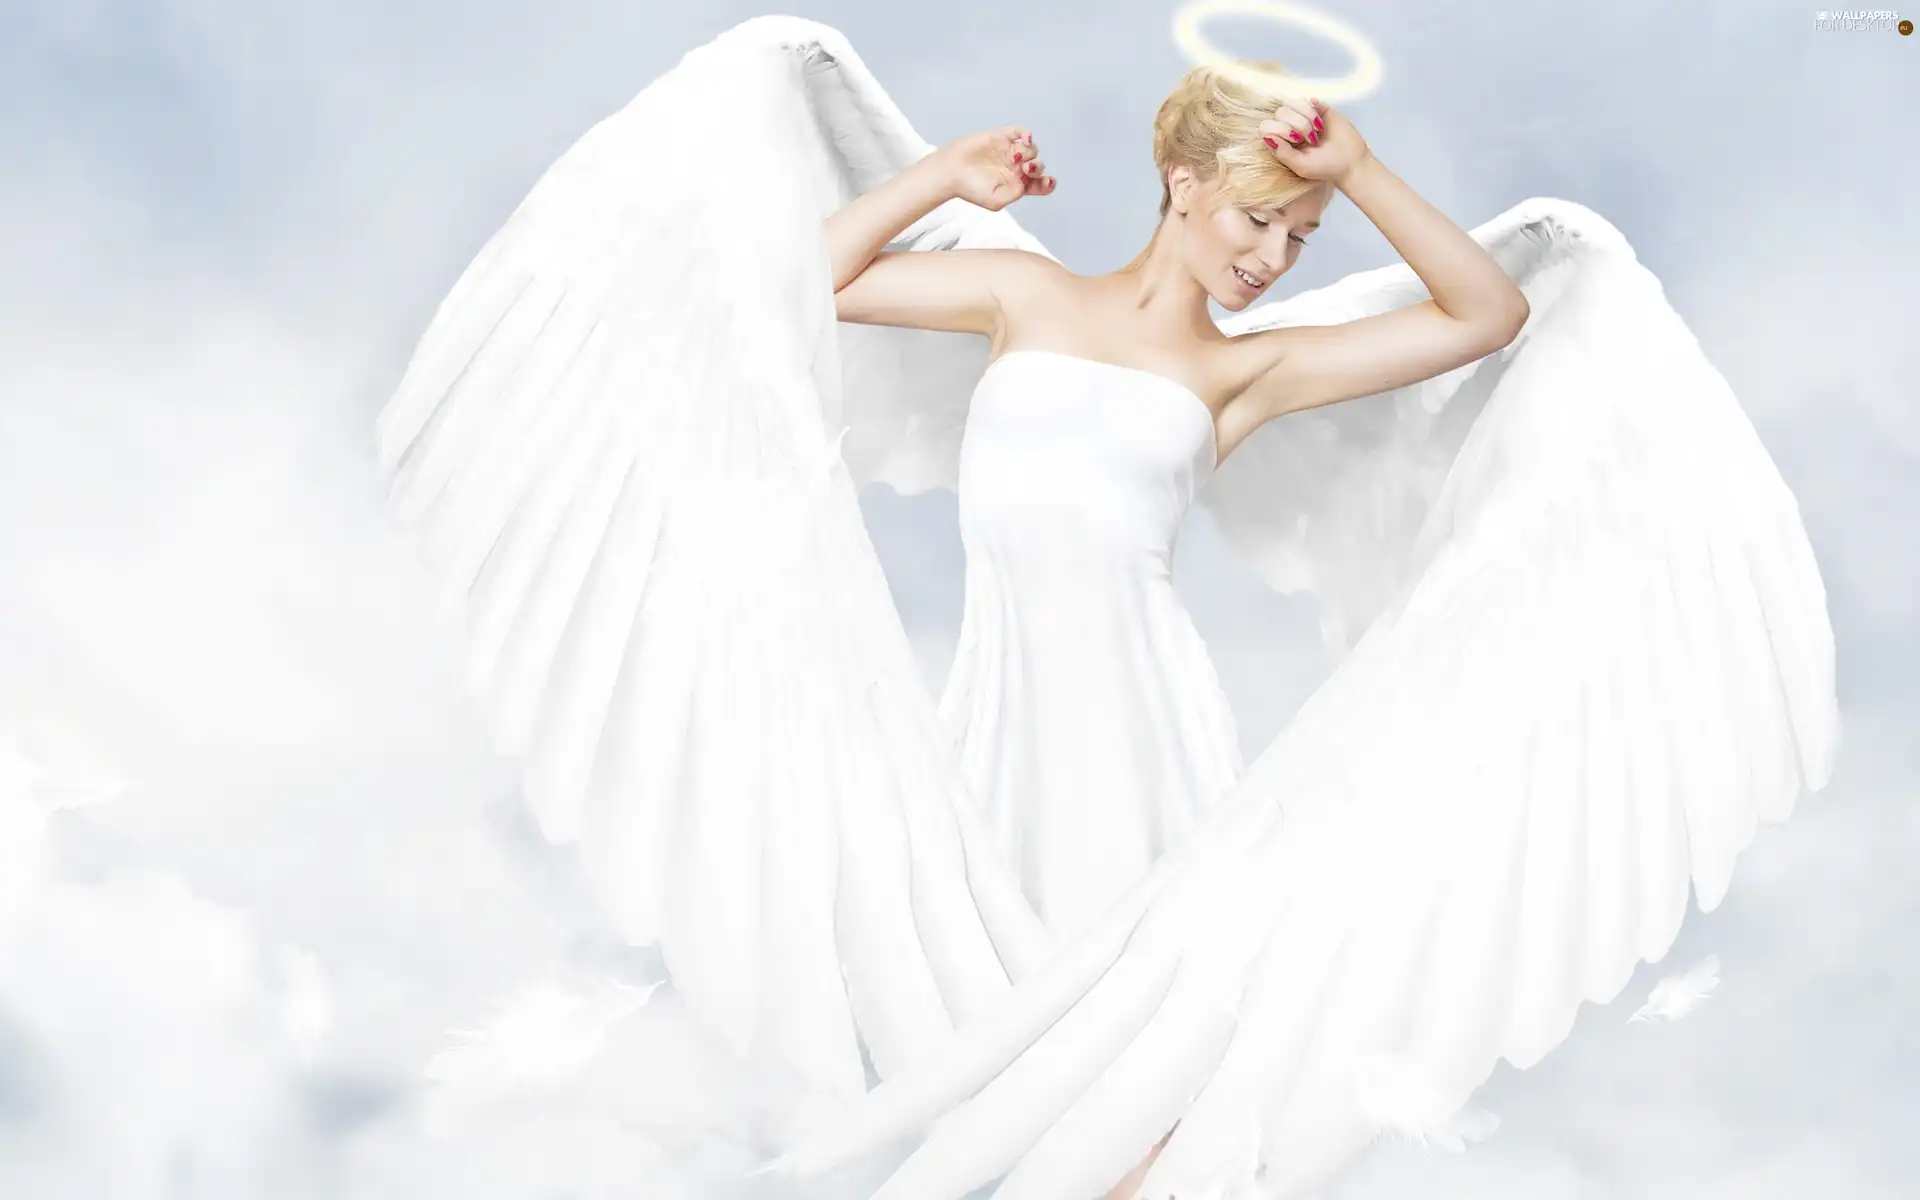 wings, Women, angel